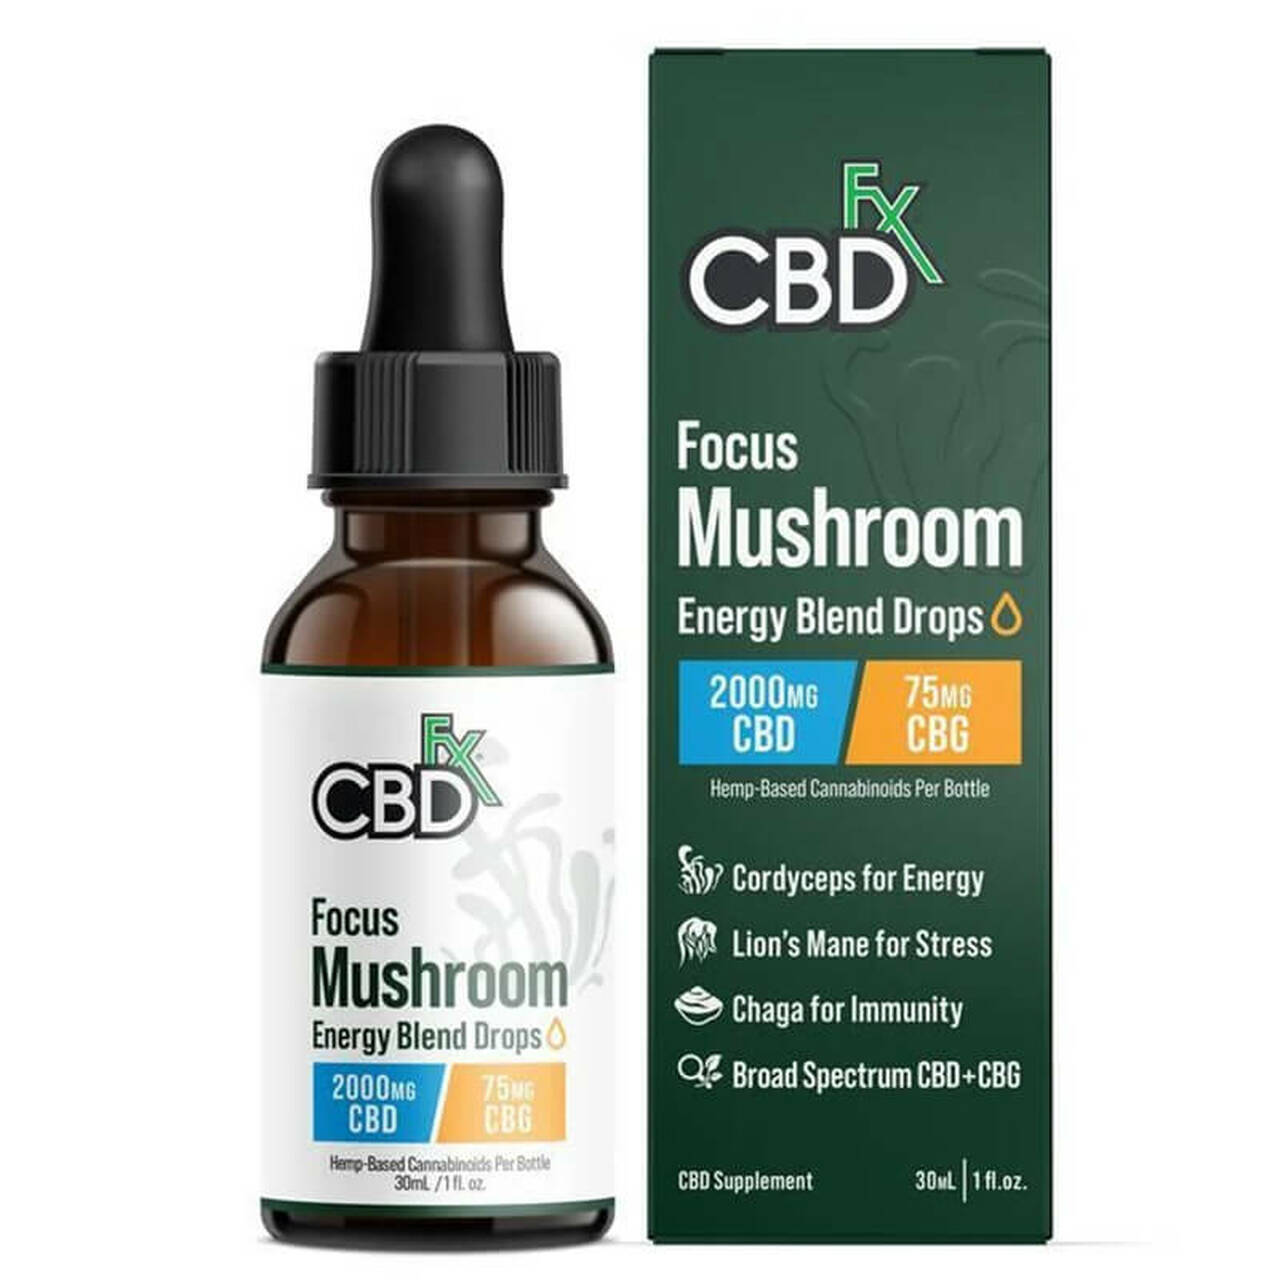 thumbnail CBD Focus Mushroom CBD:CBG Energy Blend Drops Tincture by CBDfx